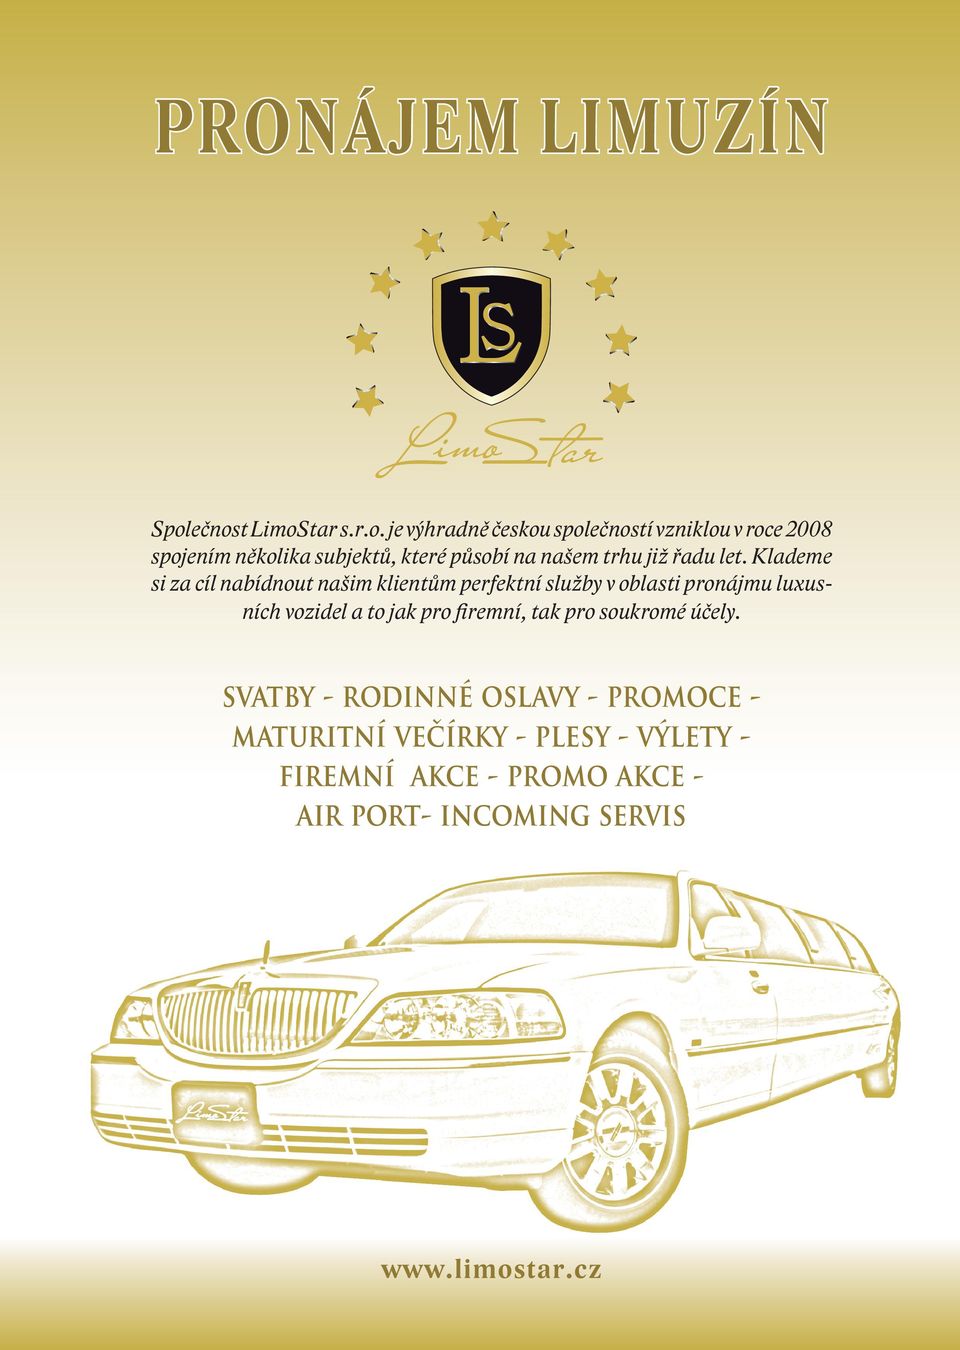 Klademe si za cíl nabídnout našim klientům perfektní služby v oblasti pronájmu luxusních vozidel a to